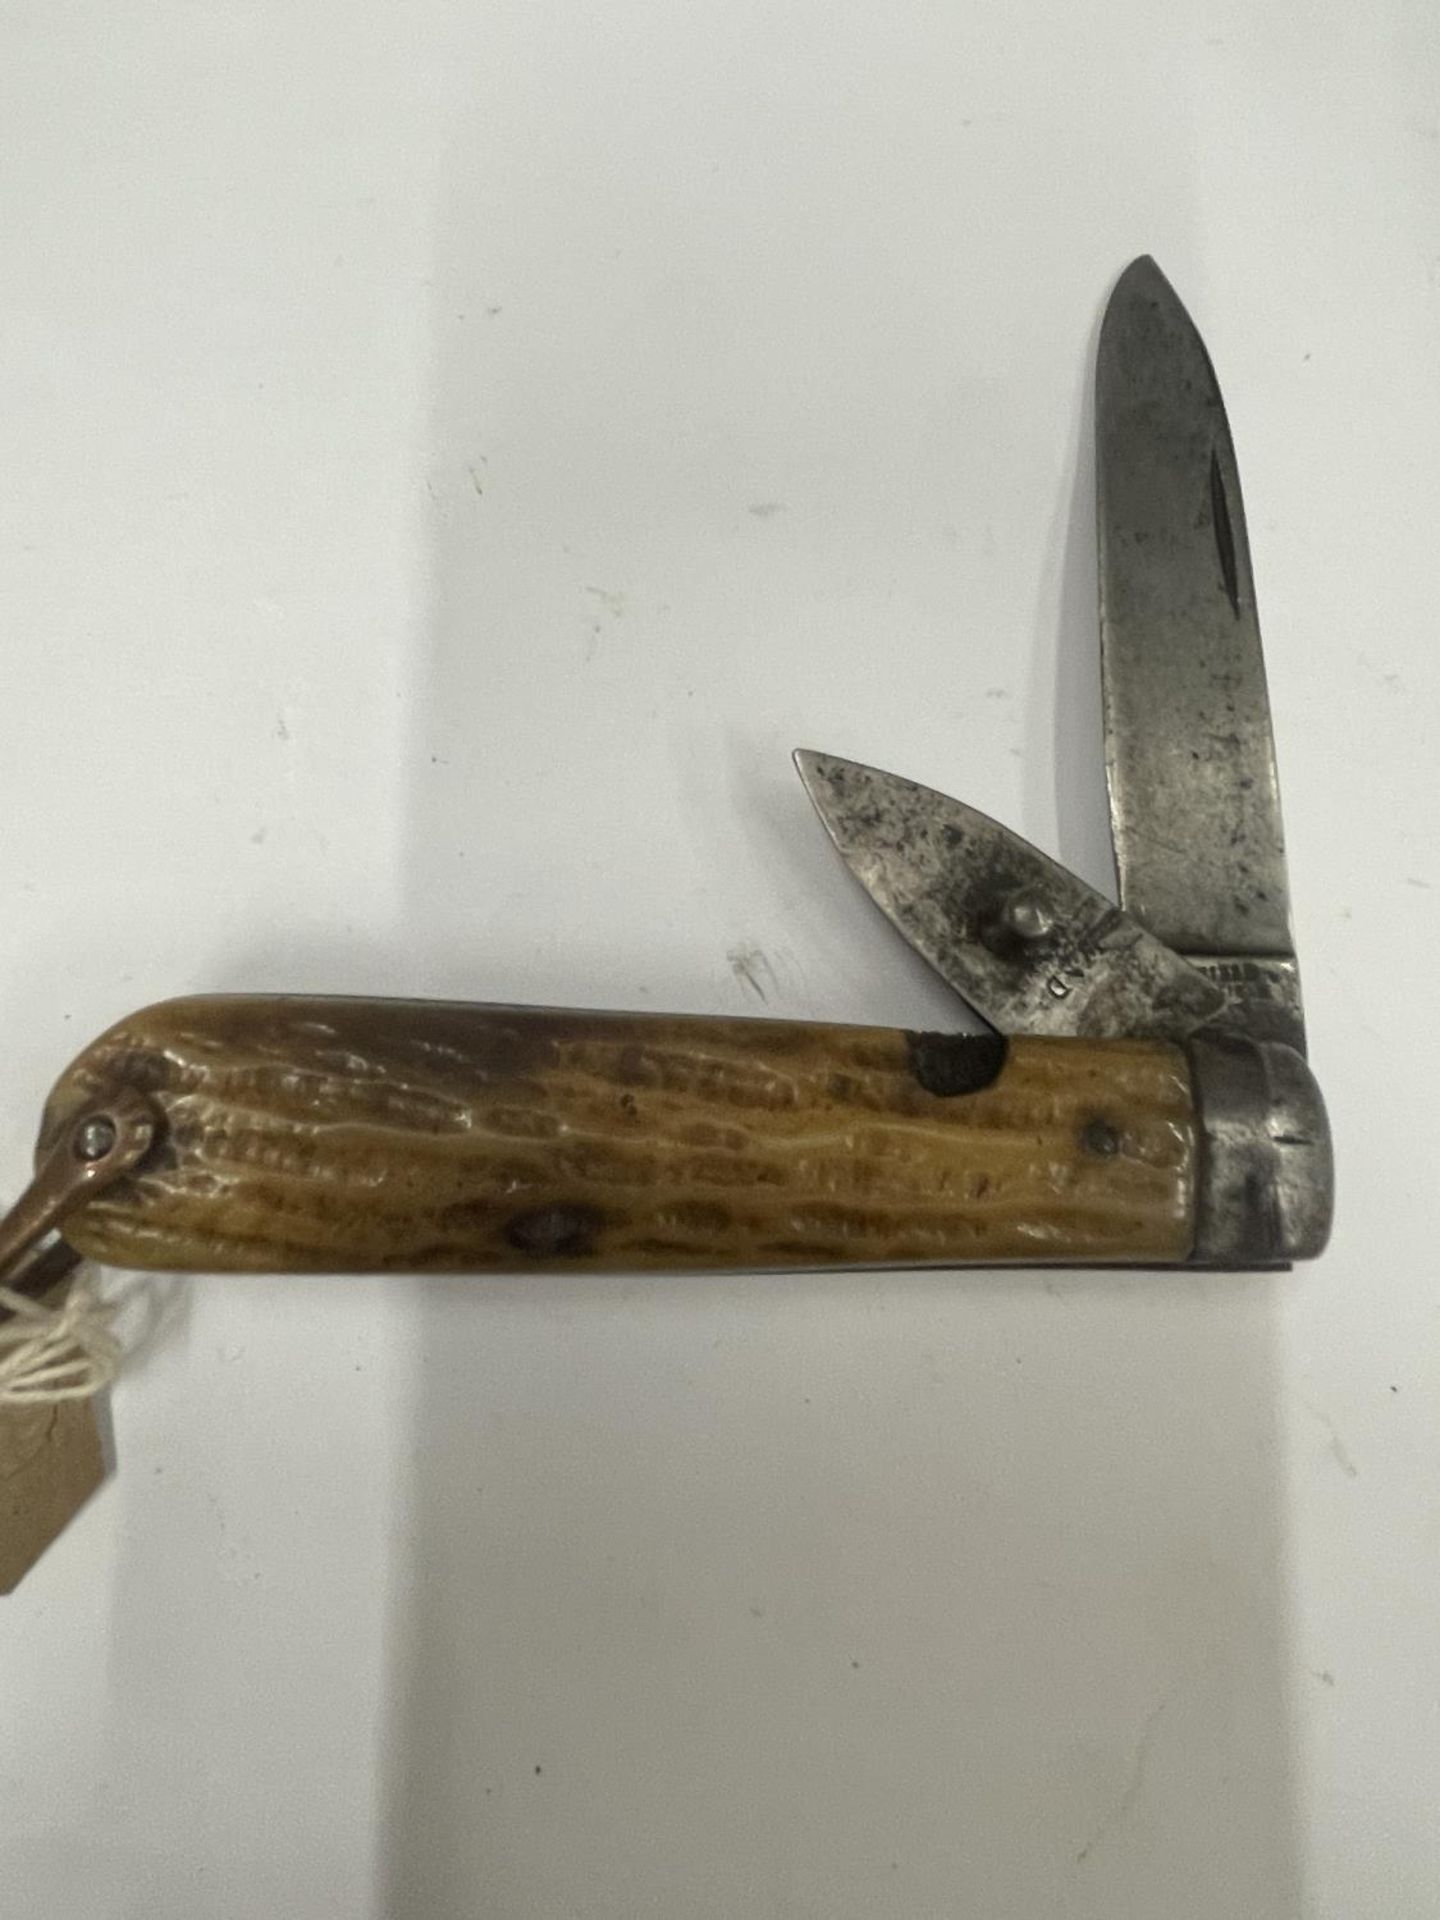 A VINTAGE SHEFFIELD POCKET KNIFE INDISTINCT MAKER